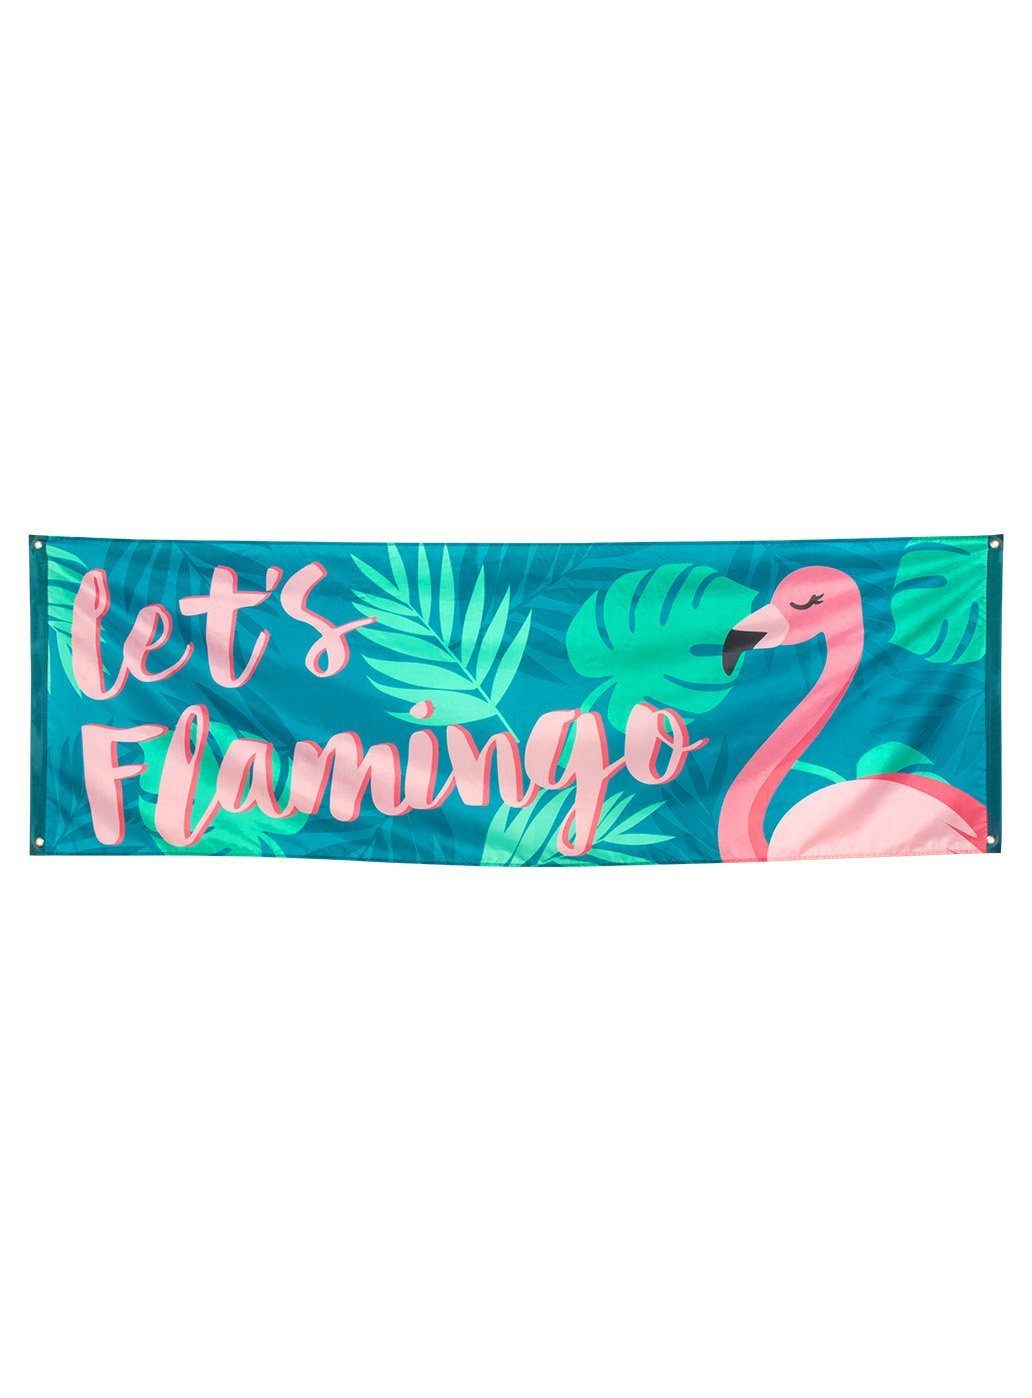 Alles sommerliche für Deine Flamingo Du was Südsee, Karibik, Hängedekoration Party Boland Beachparty: Banner, Part